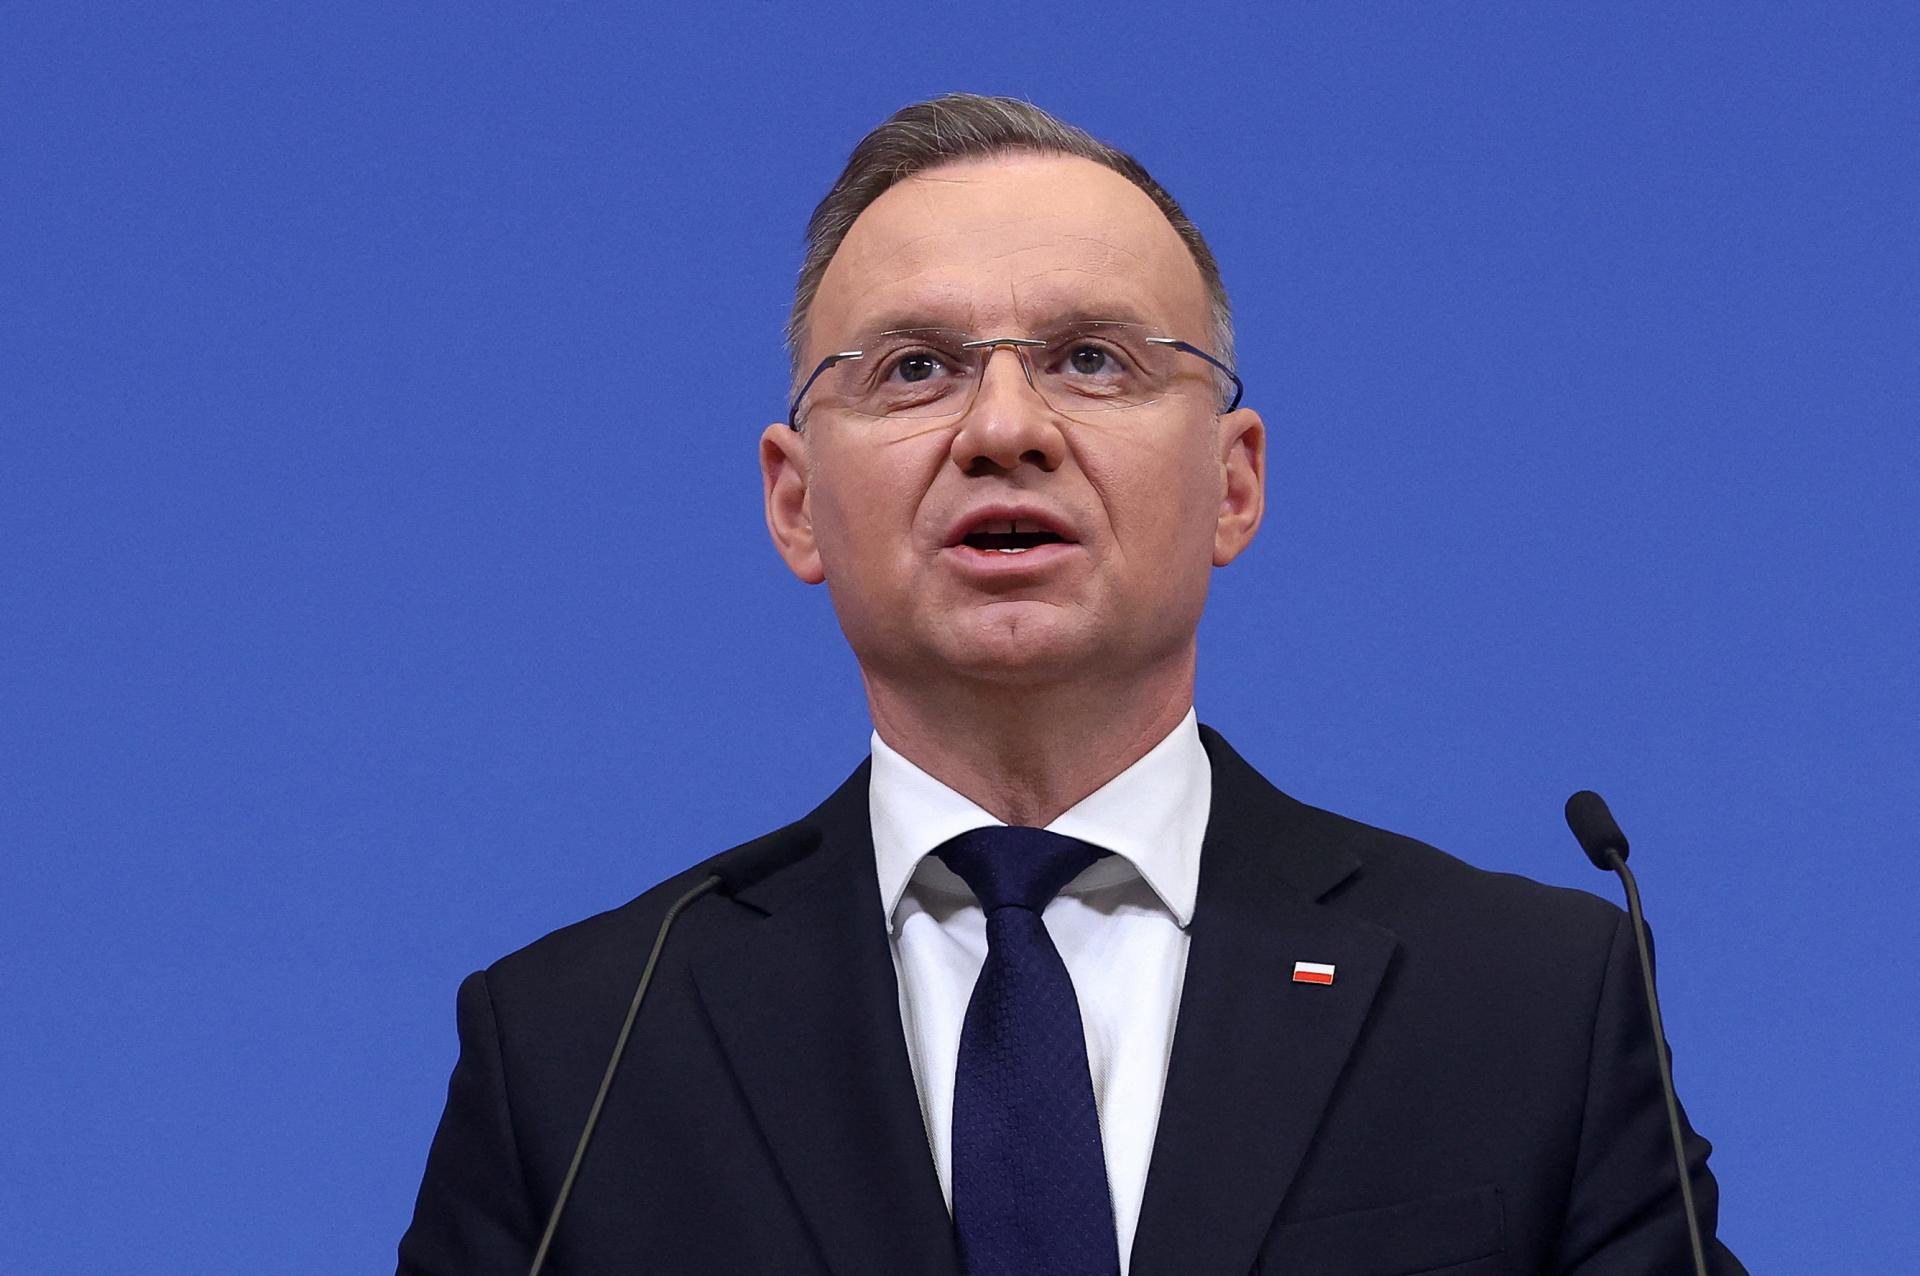 Poľský prezident Duda žiada krajiny NATO, aby zvýšili výdavky na obranu